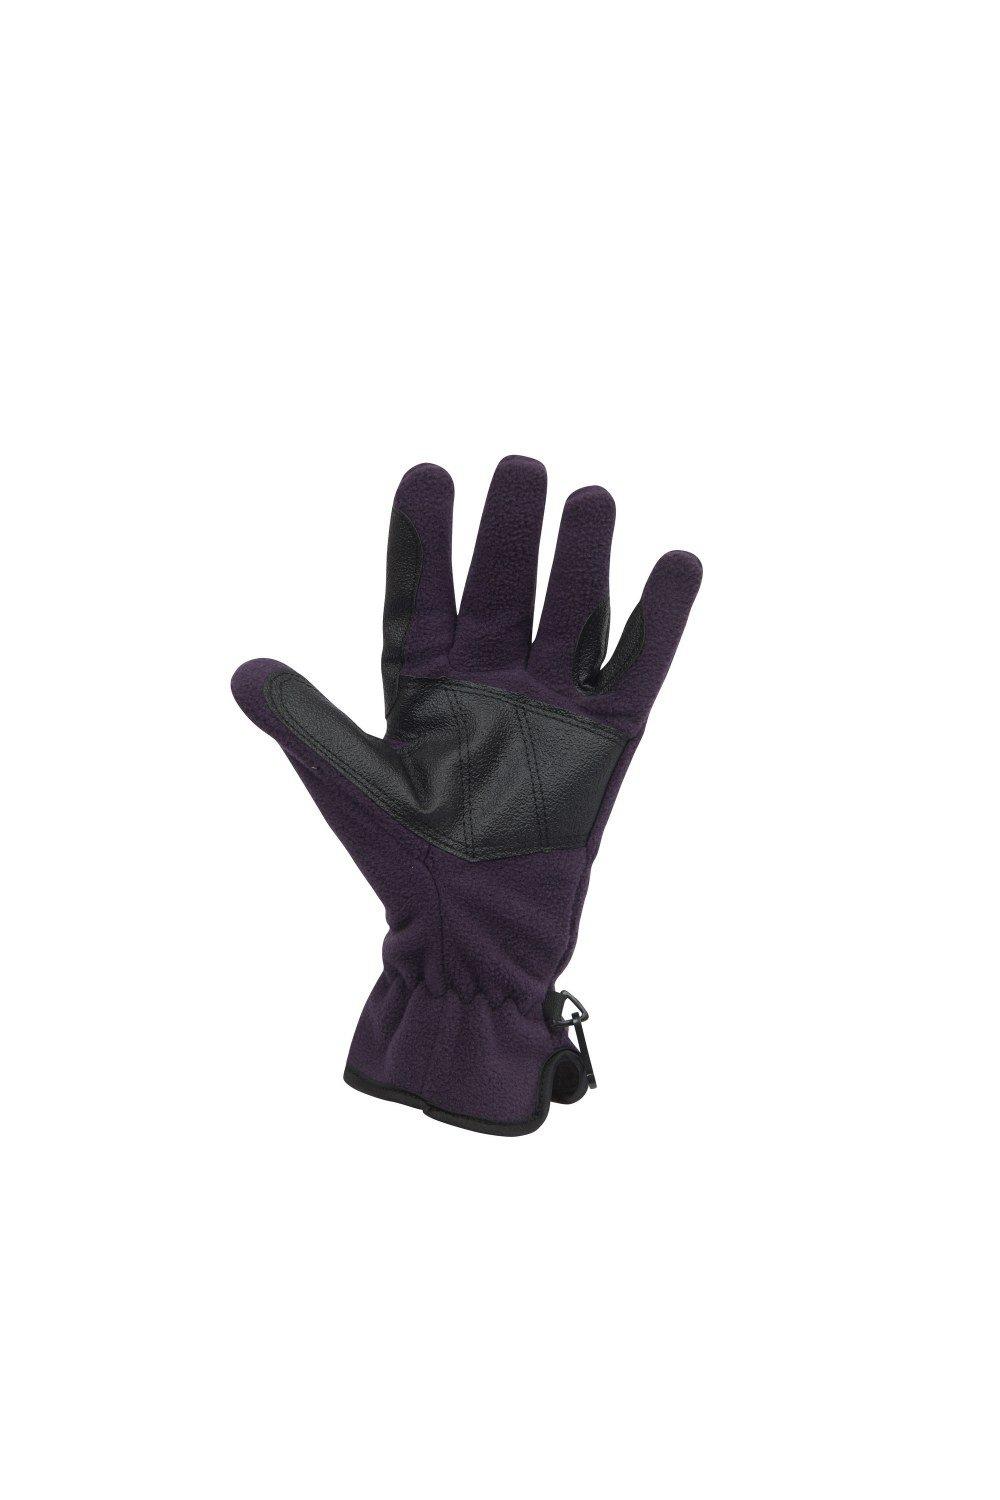 Флисовые перчатки для верховой езды Polar Dublin, фиолетовый